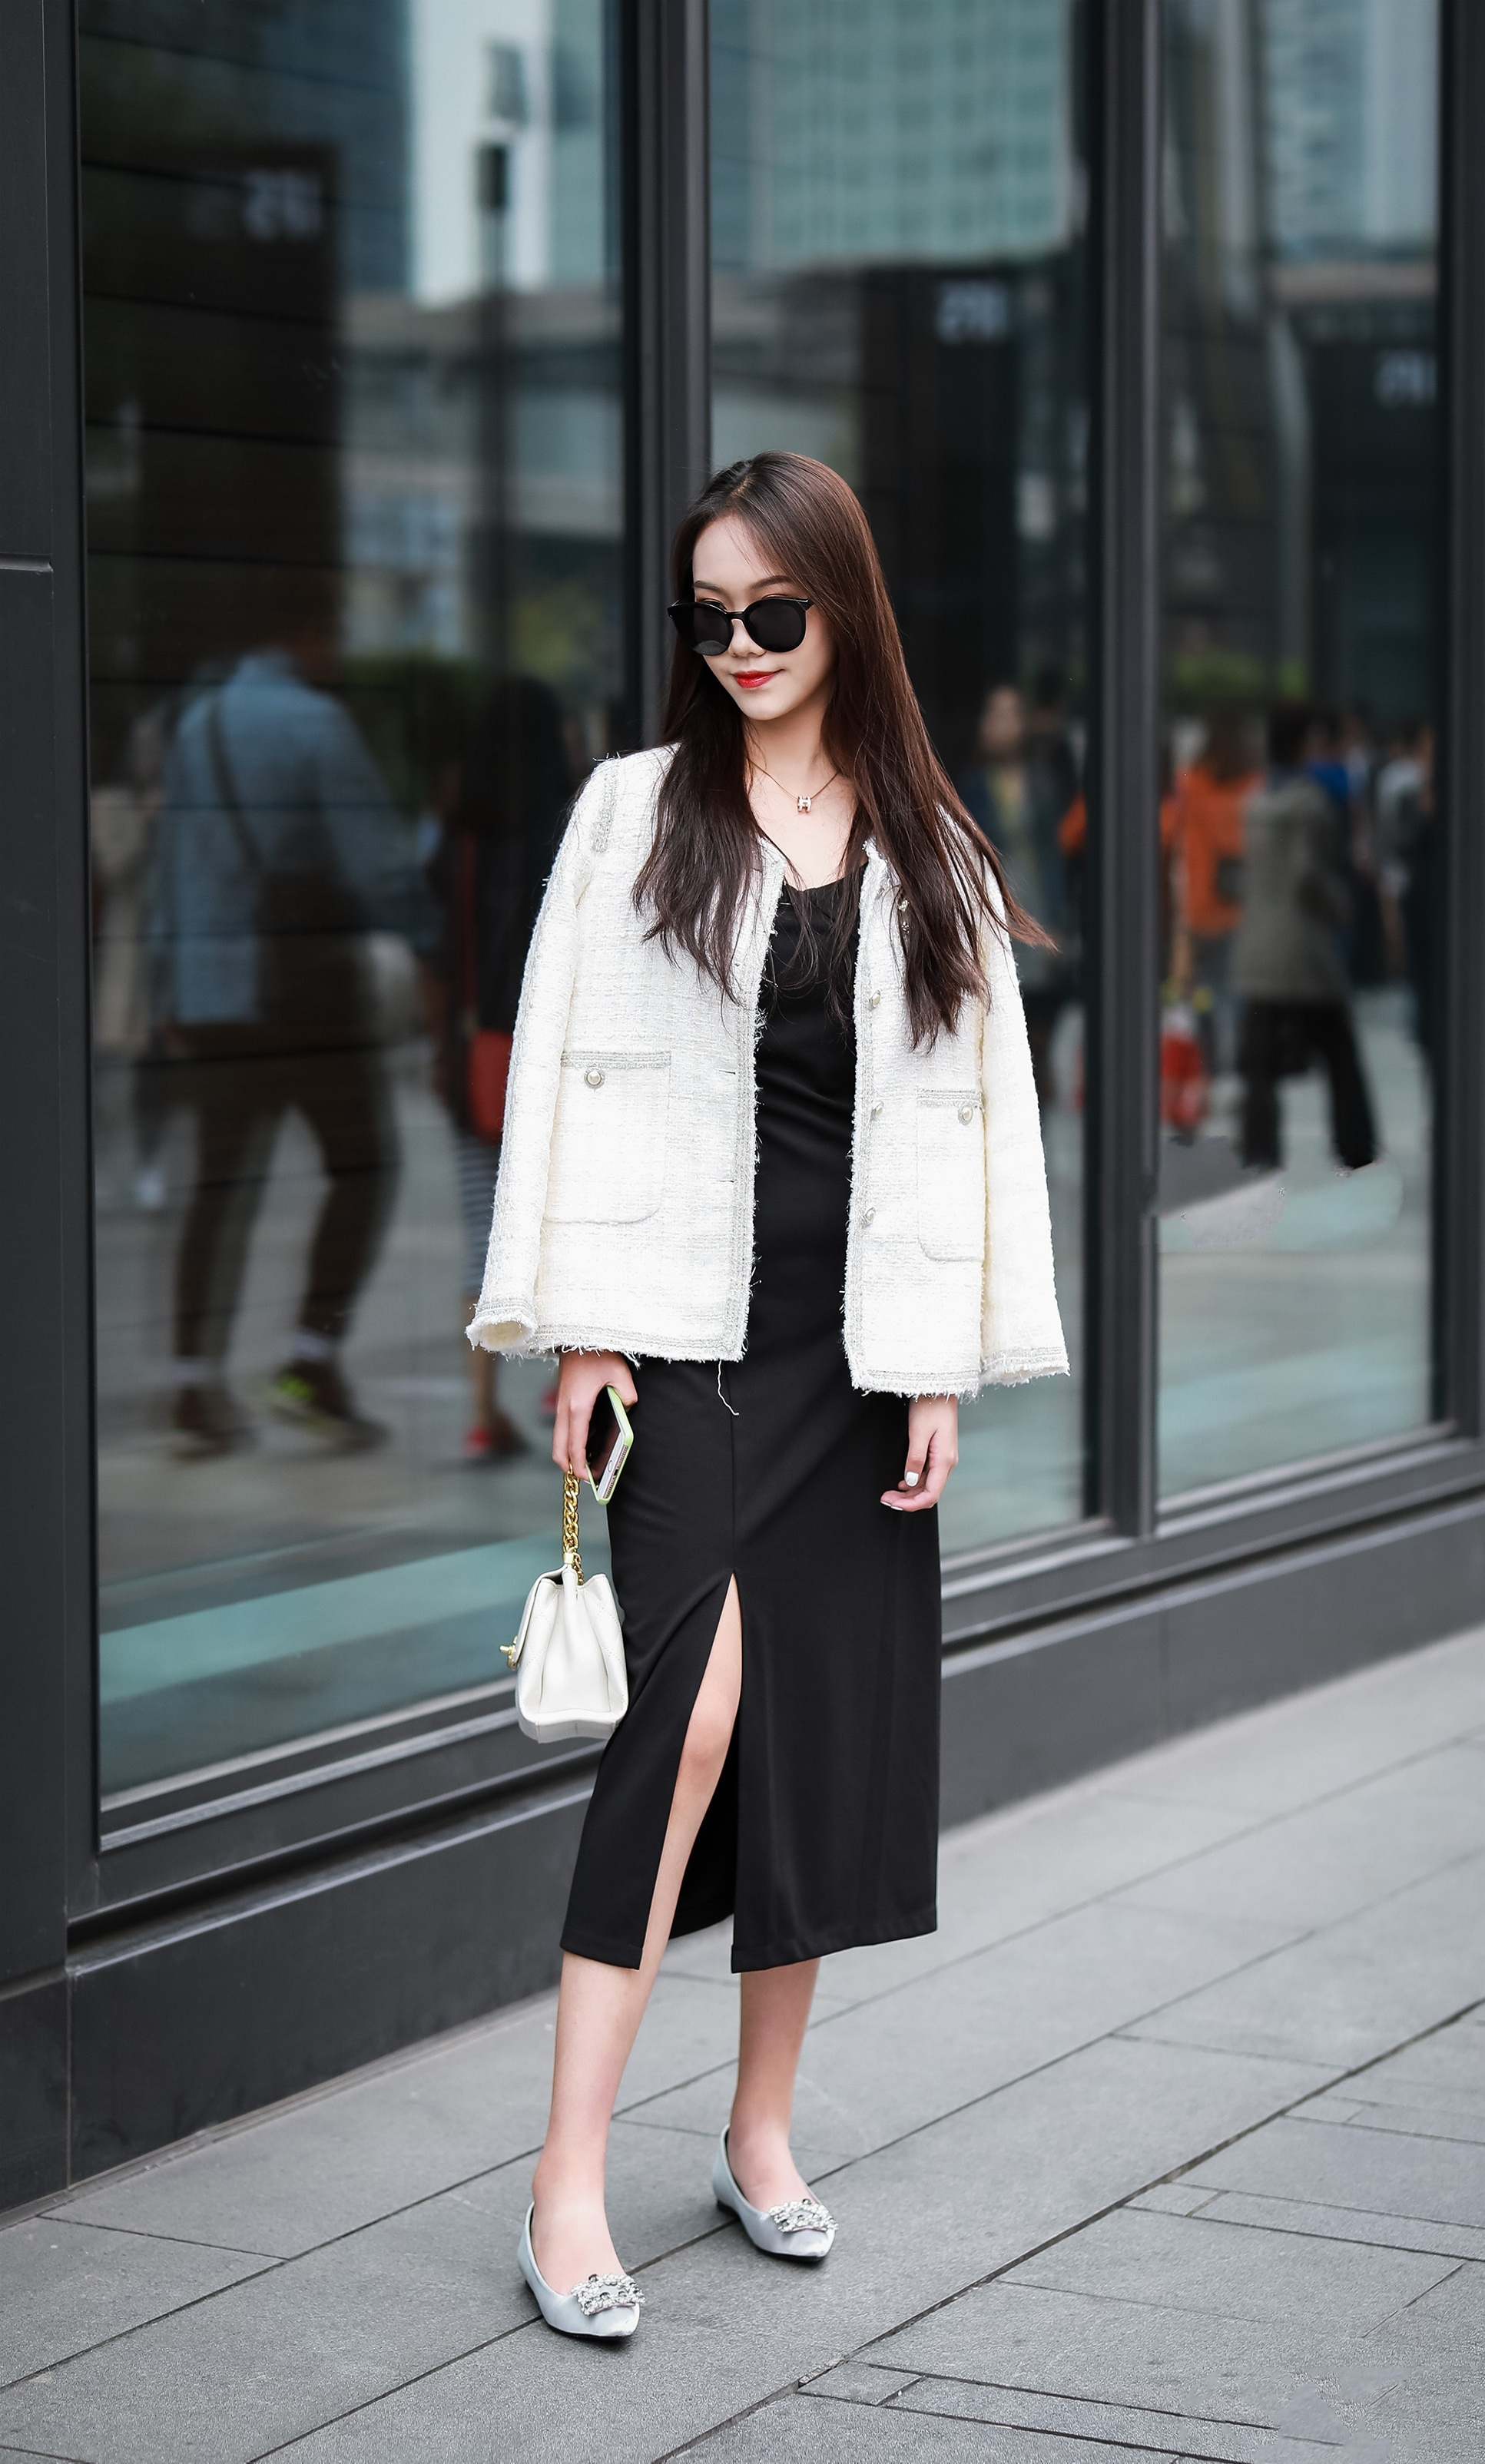 黑白配才是时尚圈王道,搭配出慵懒随意的时尚感